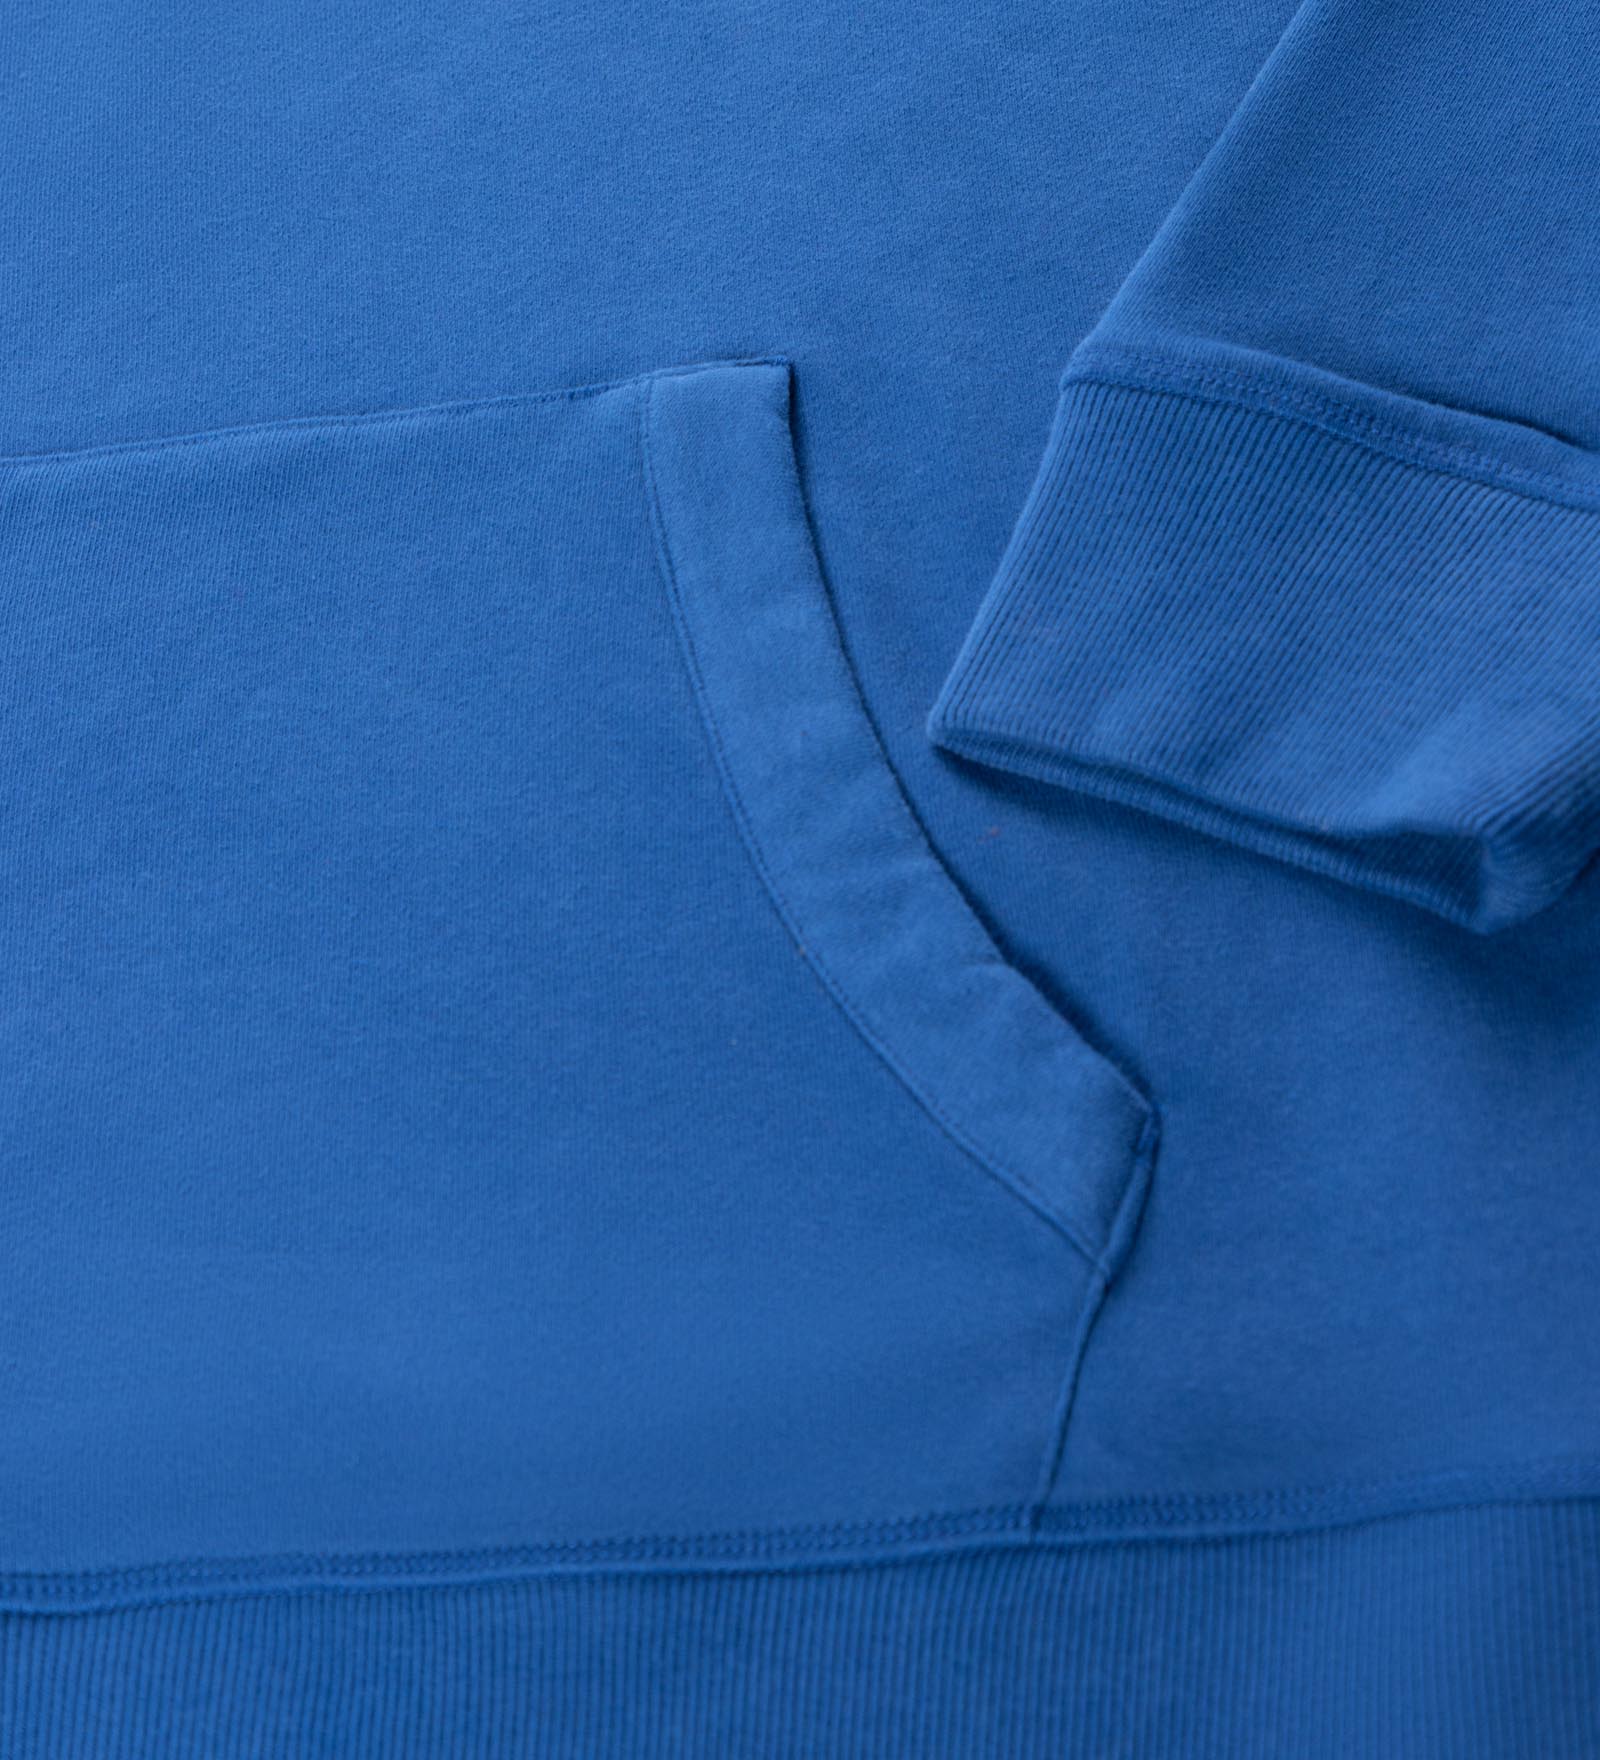 Sudadera con capucha Azul para Hombre y Mujer 